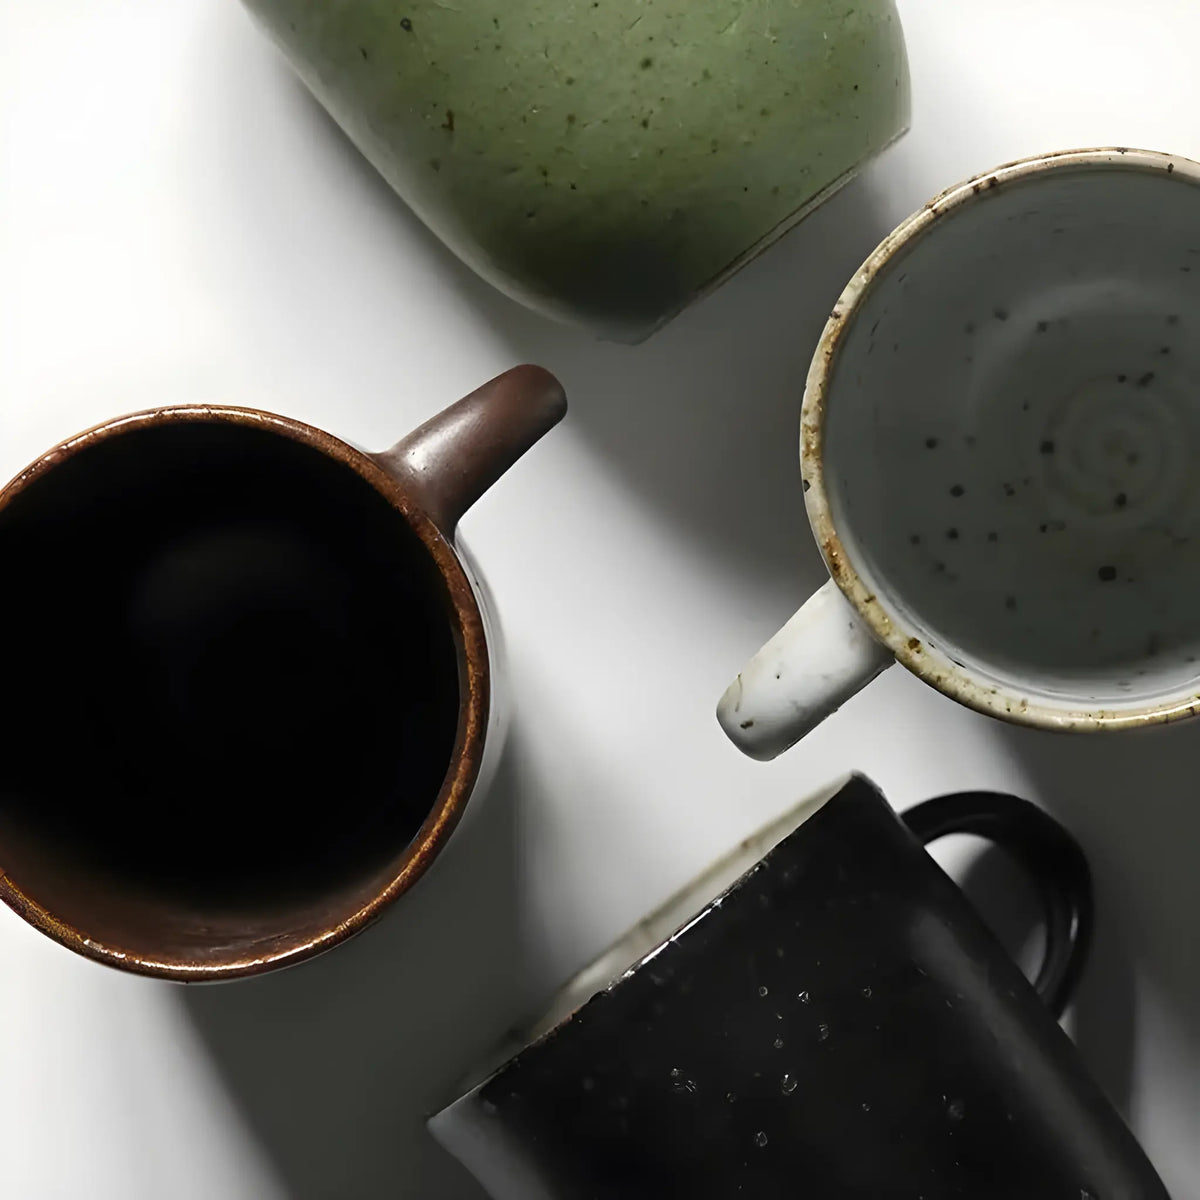 Serres Handmade Stoneware Coffee Mug 8 Oz - Macchiaco